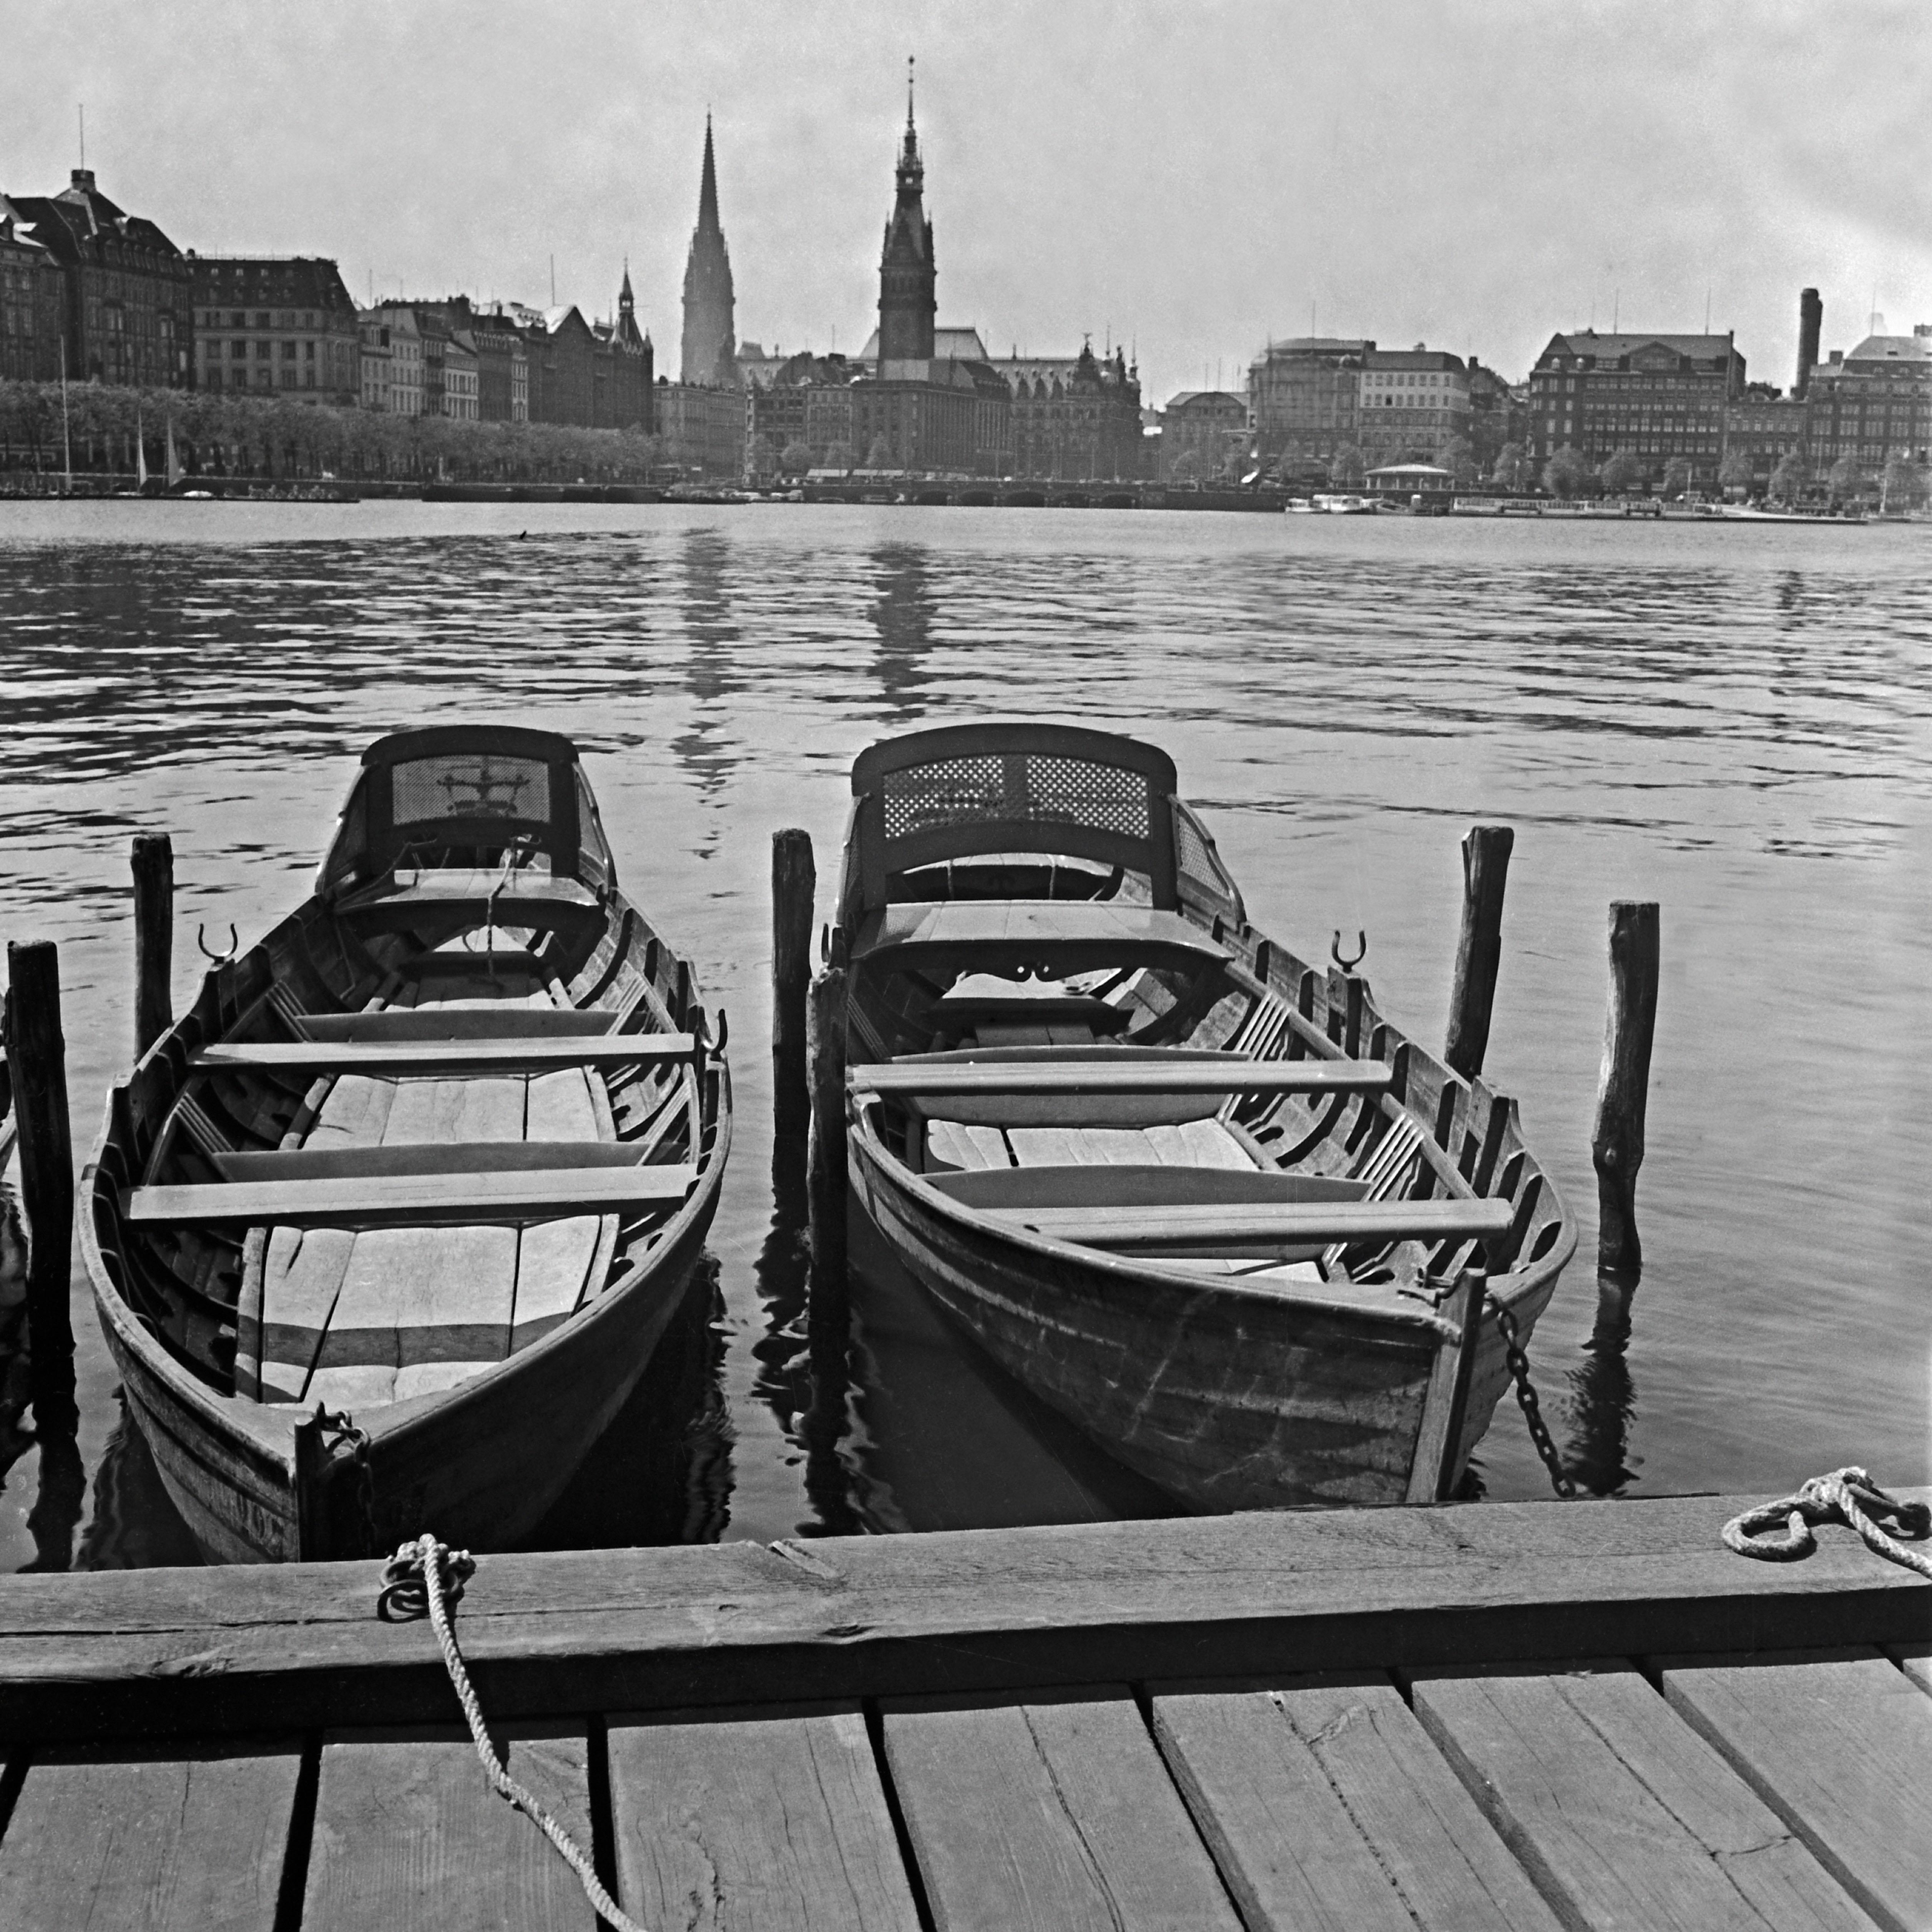 Karl Heinrich Lämmel Black and White Photograph – Boats am Heck auf Alster mit Blick auf das Stadthaus von Hamburg, Deutschland 1938, Später gedruckt 